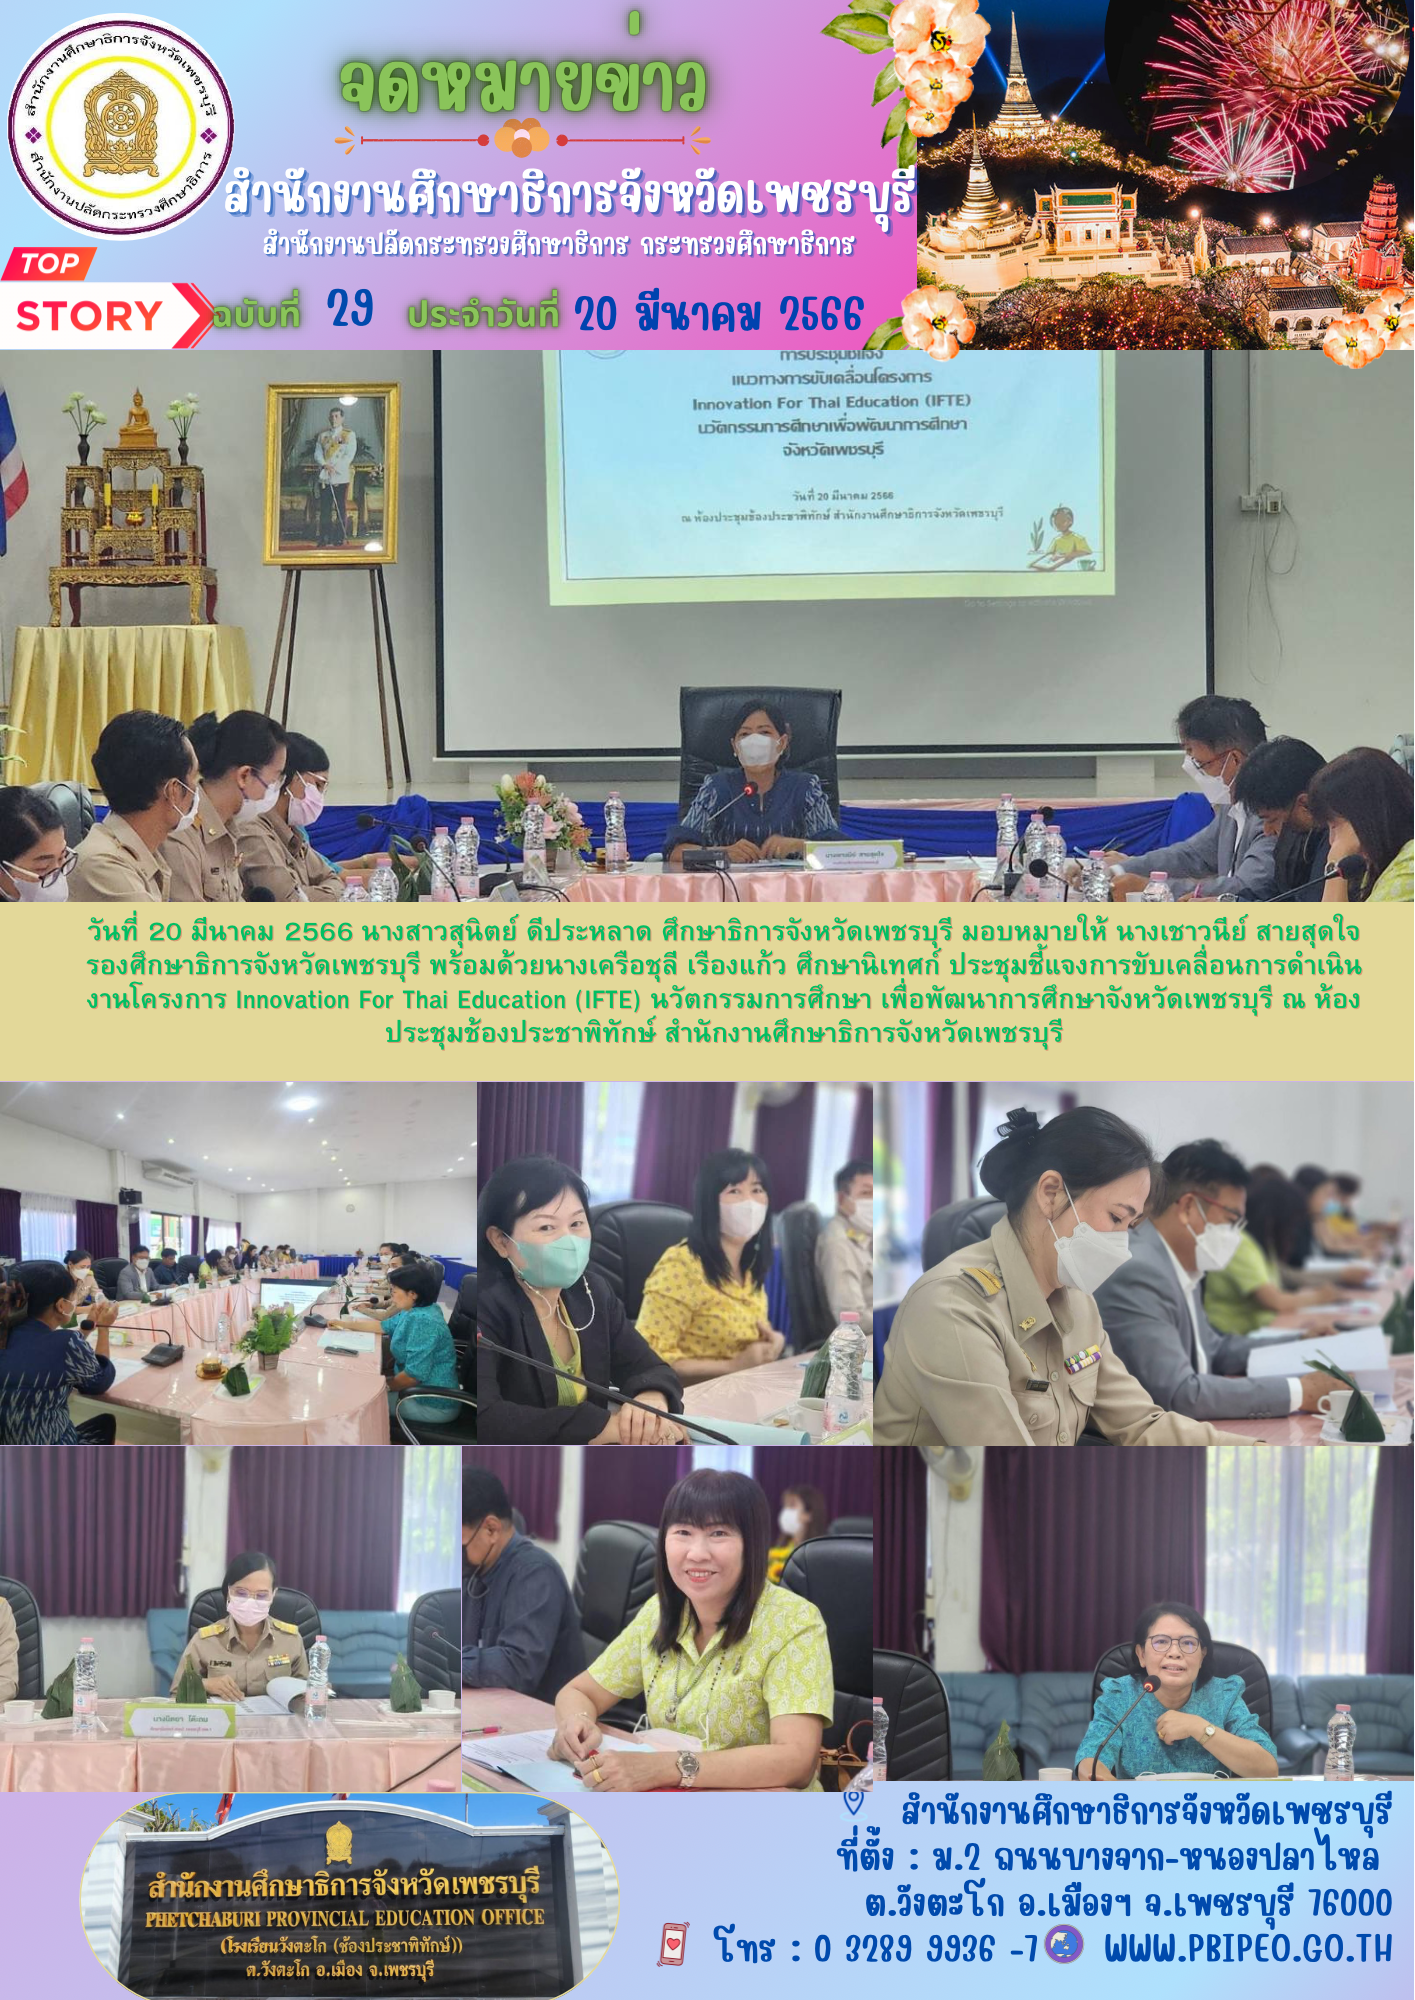 การประชุมชี้แจงแนวทางการขับเคลื่อนโครงการ Innovation For Thai Education (IFTE) นวัตกรรมการศึกษา เพื่อพัฒนาการศึกษาจังหวัดเพชรบุรี ประจำปีงบประมาณ พ.ศ.2566